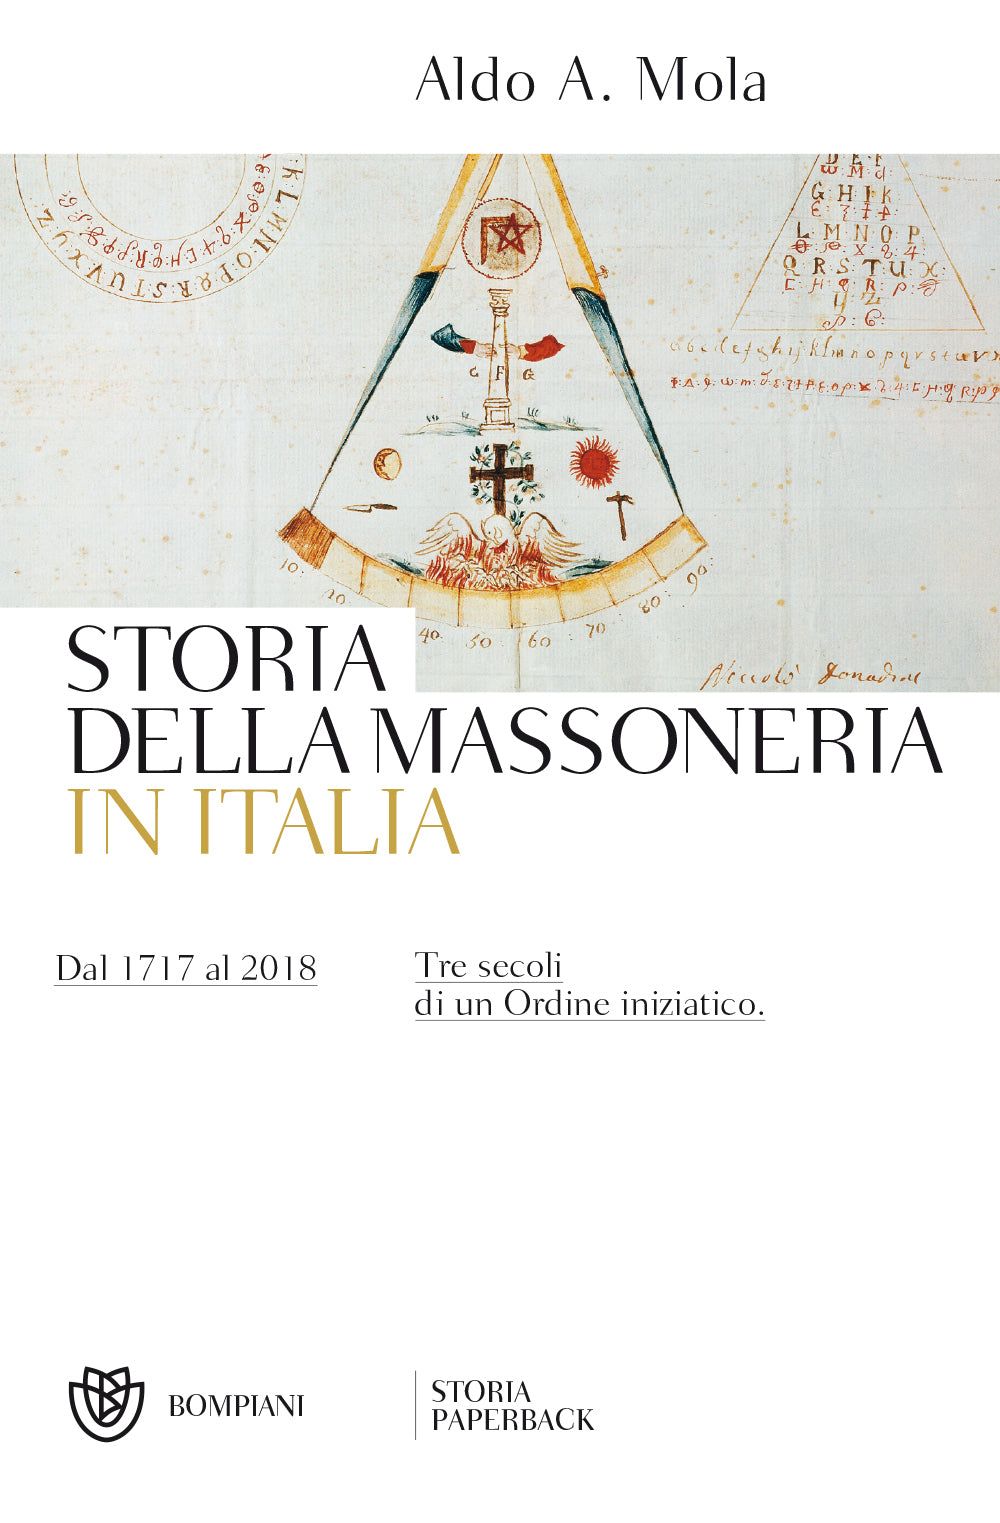 Storia della massoneria in Italia::Dal 1717 al 2018 - Tre secoli di un Ordine iniziatico